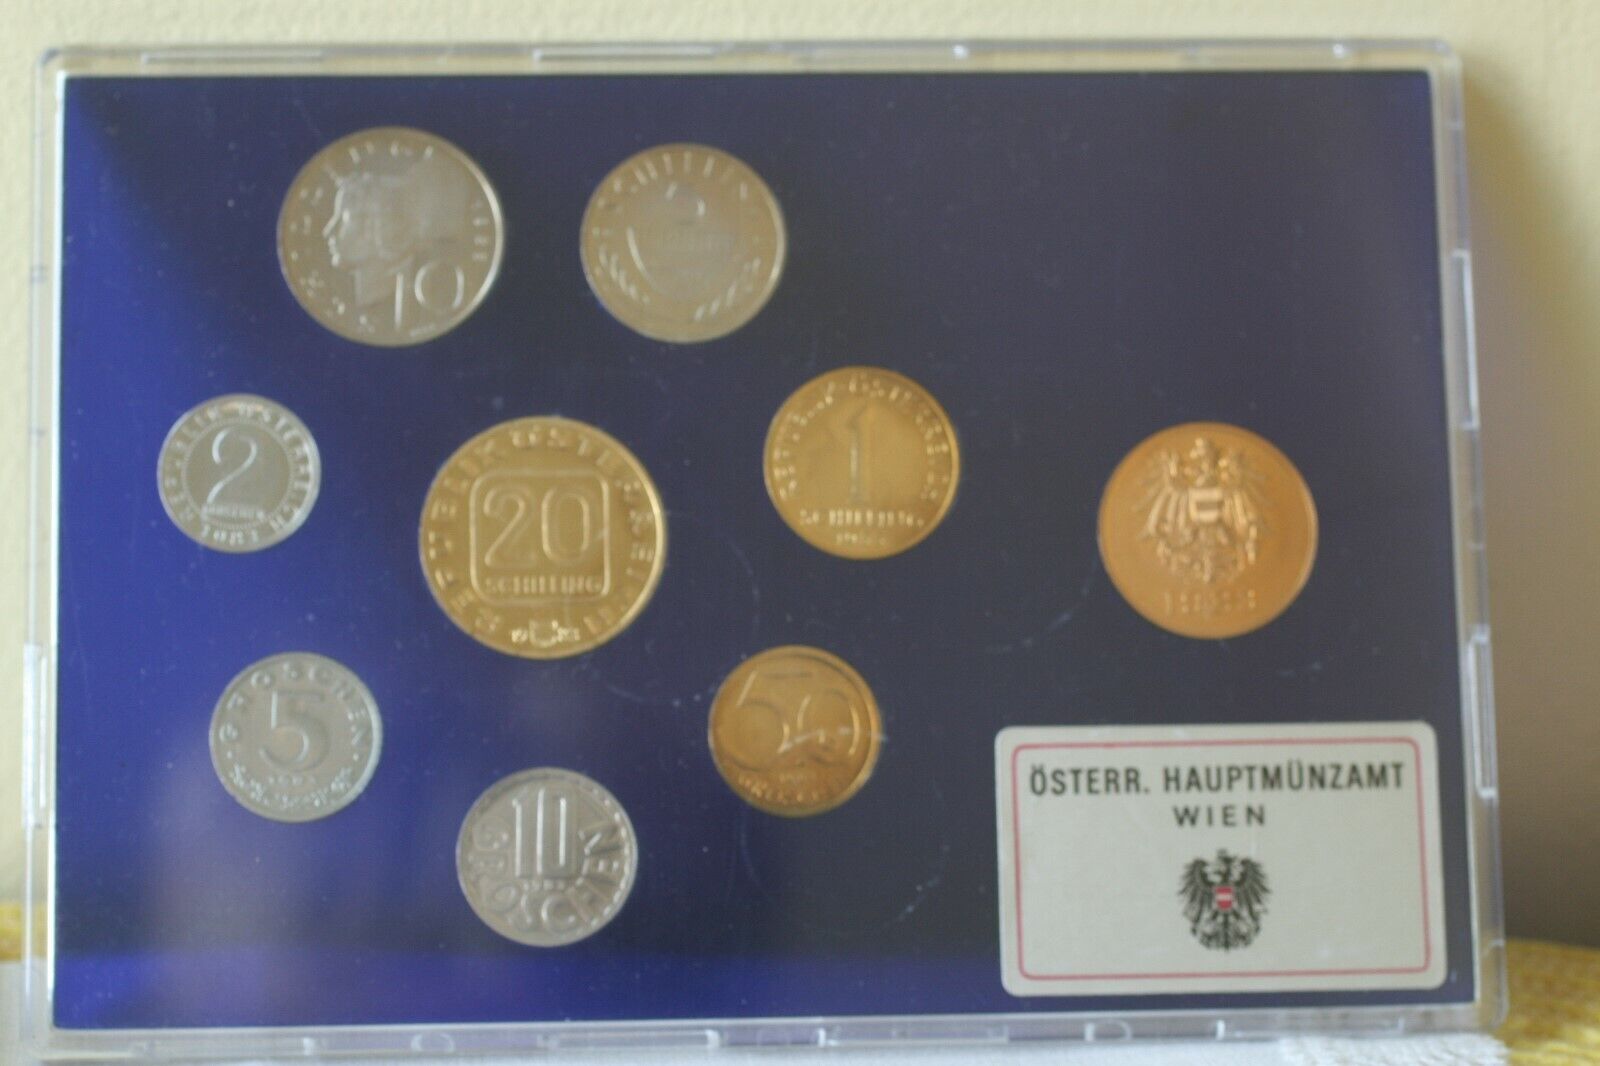 KLEINMUNZENSATZ SCHILLING COINS  AUSTRIAN  MINT 1983 IN PLASTIC CASE